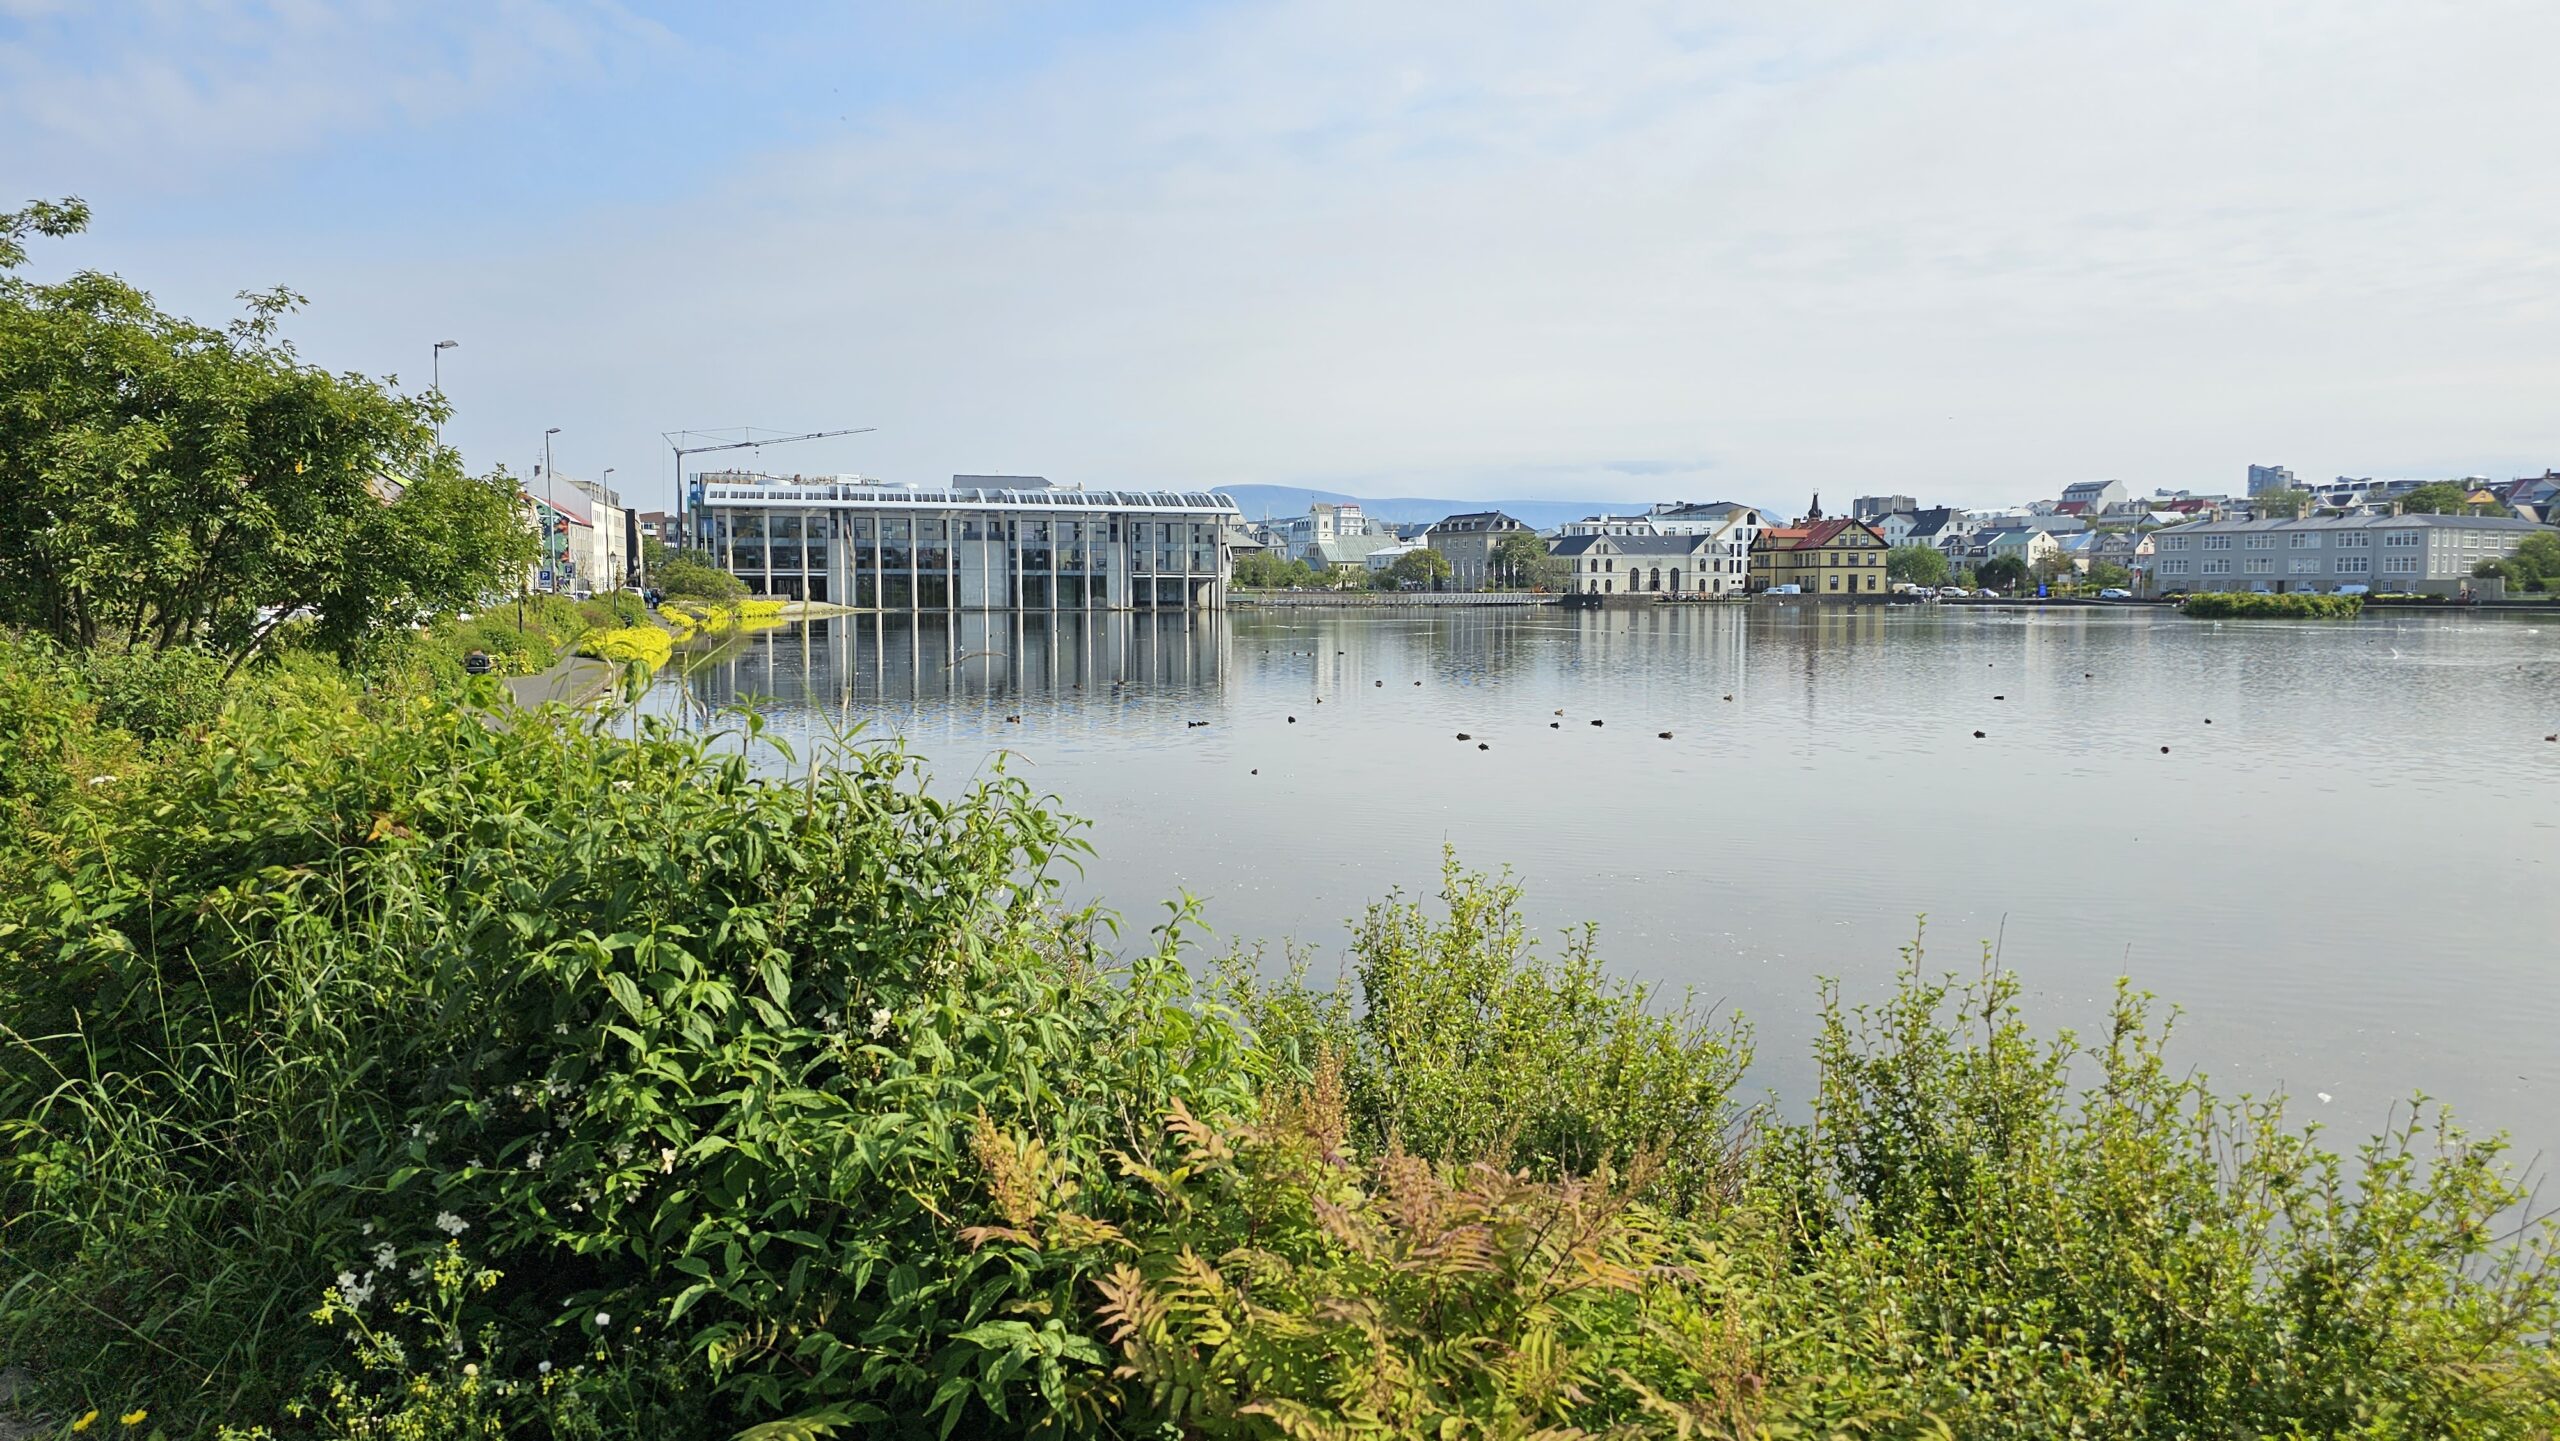 Reykjavik Pond